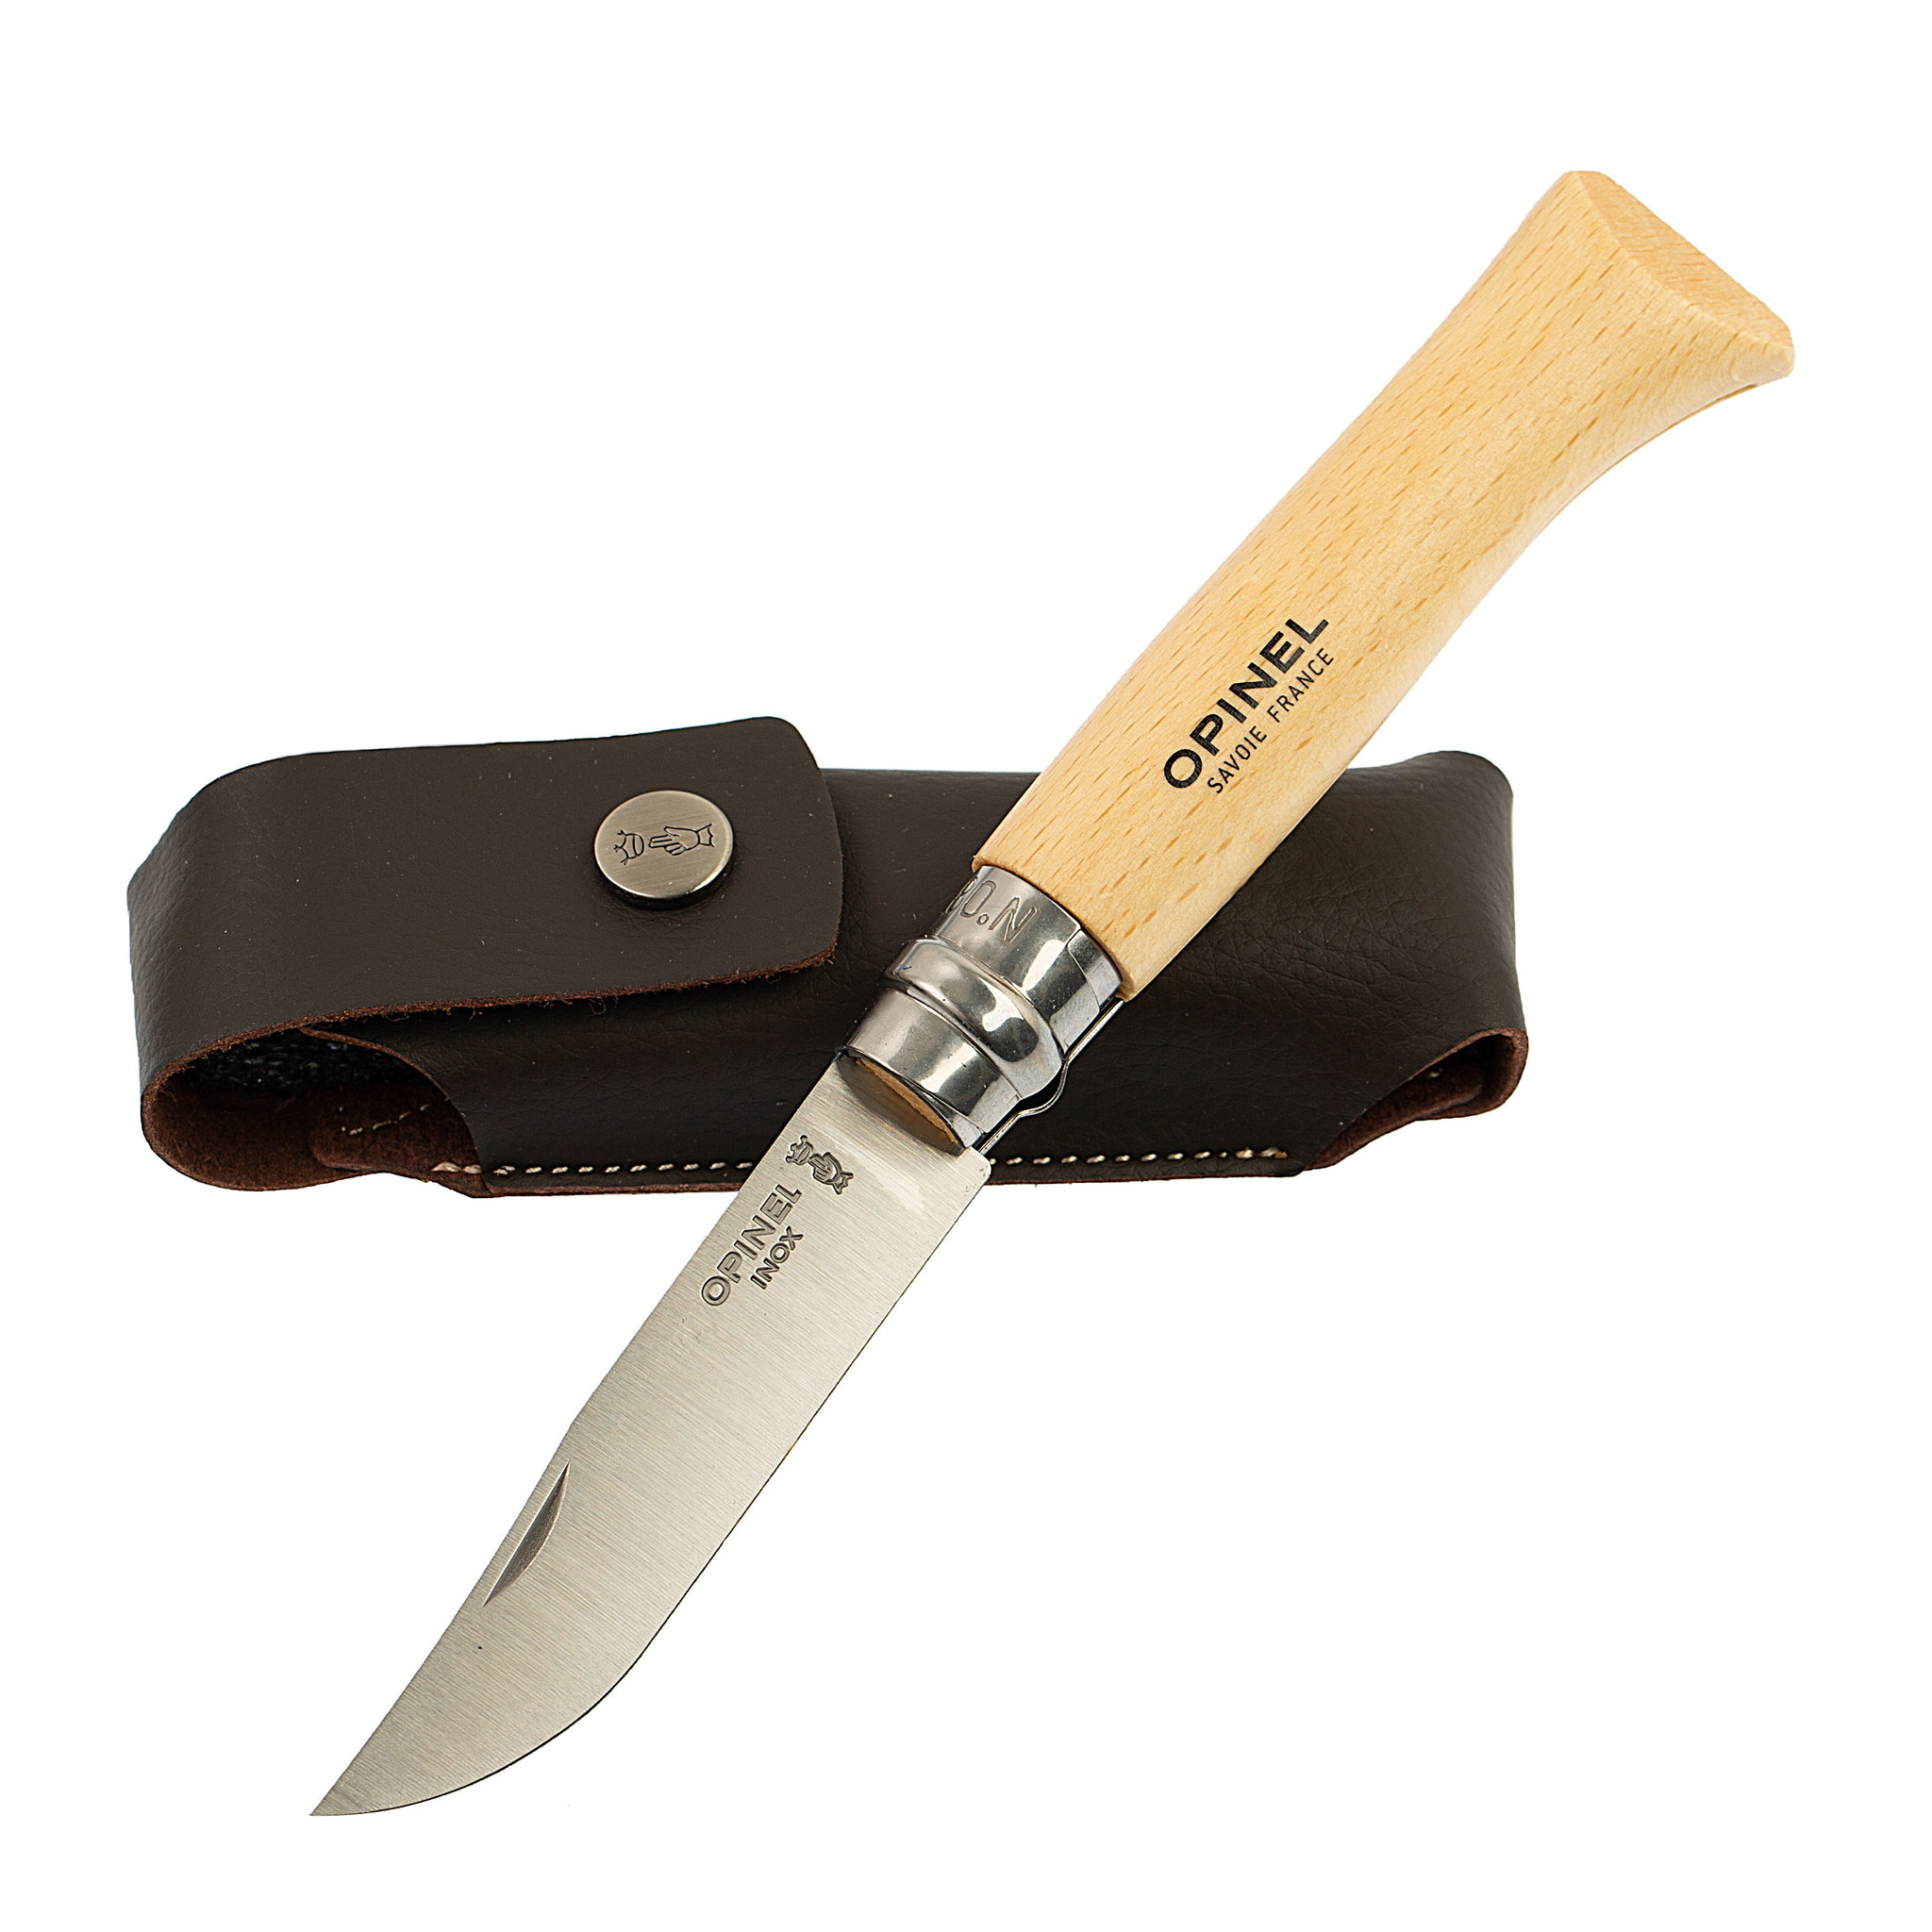 Складной Нож Opinel №8, нержавеющая сталь Sandvik 12C27, бук, с чехлом, 001089, картонная коробка от Ножиков